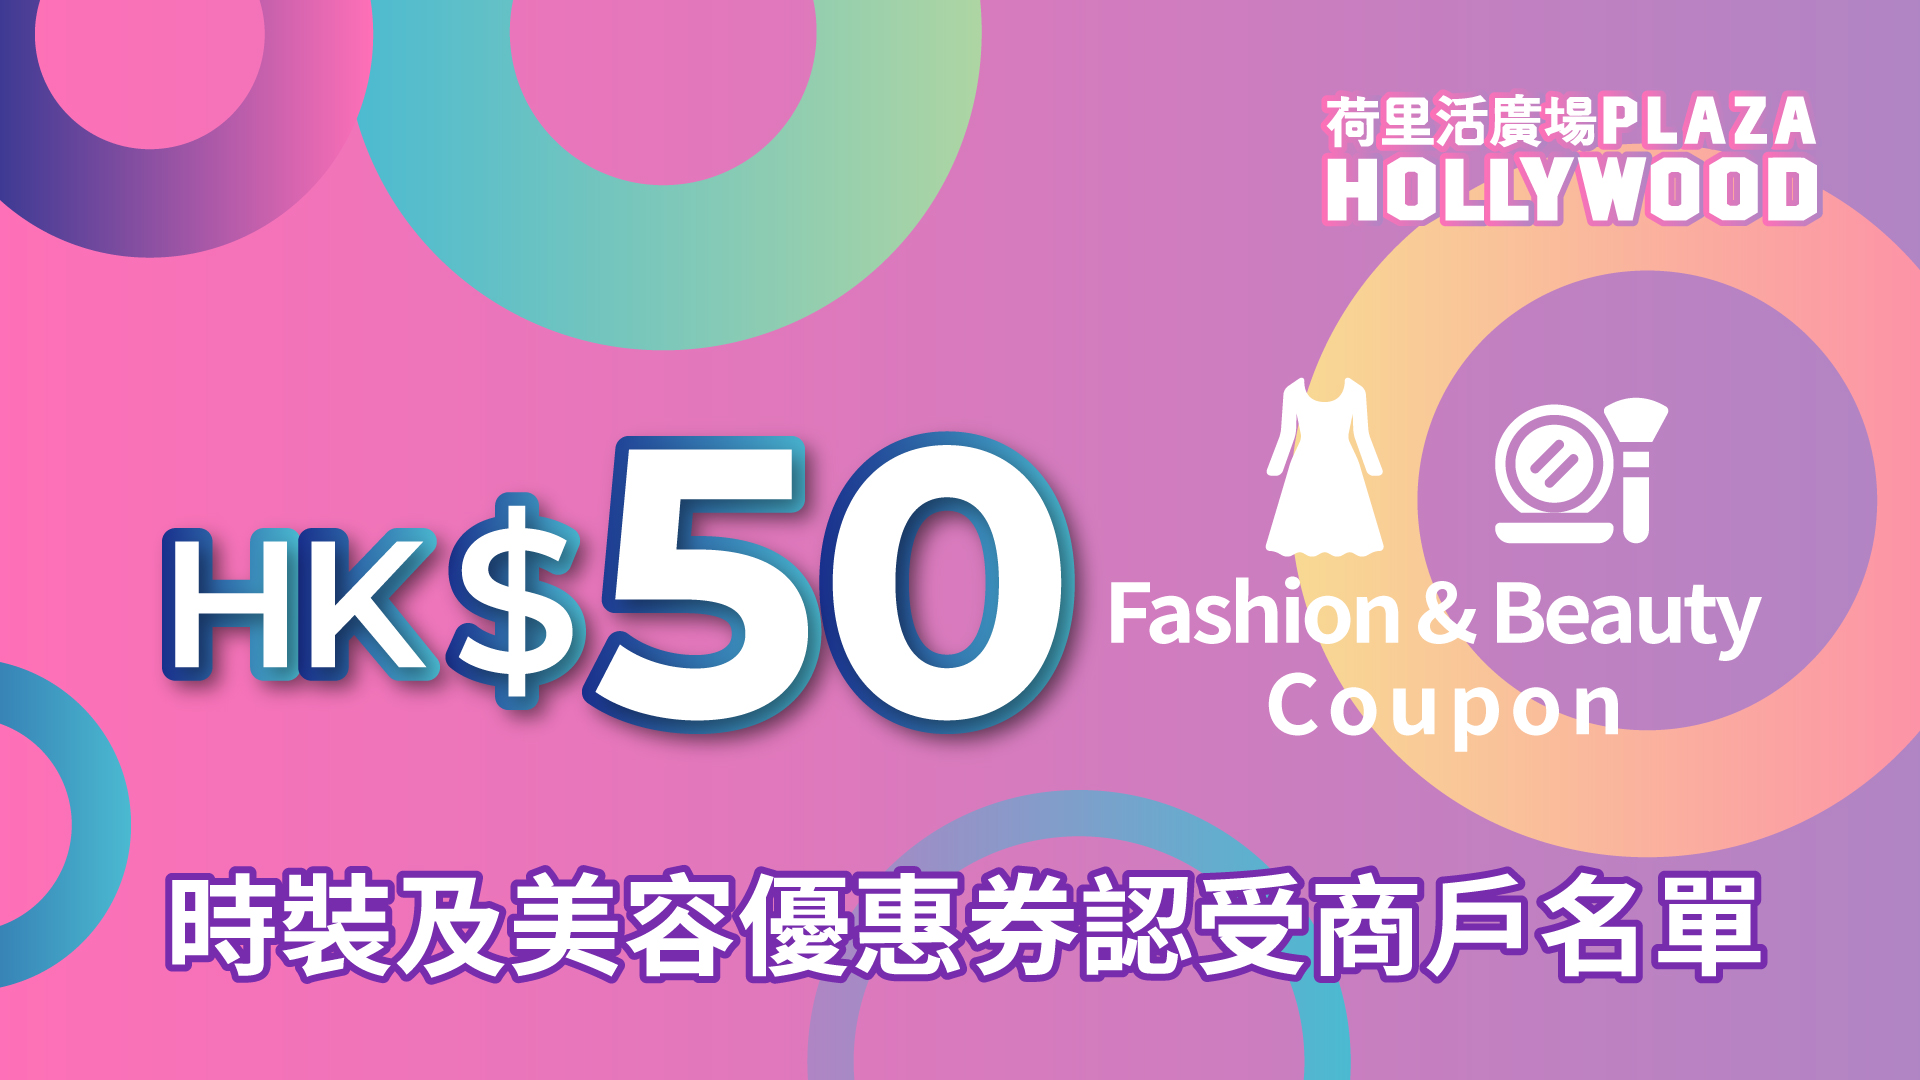 荷里活广场HK$50指定商户时装及美容优惠券 - 参与之指定商户